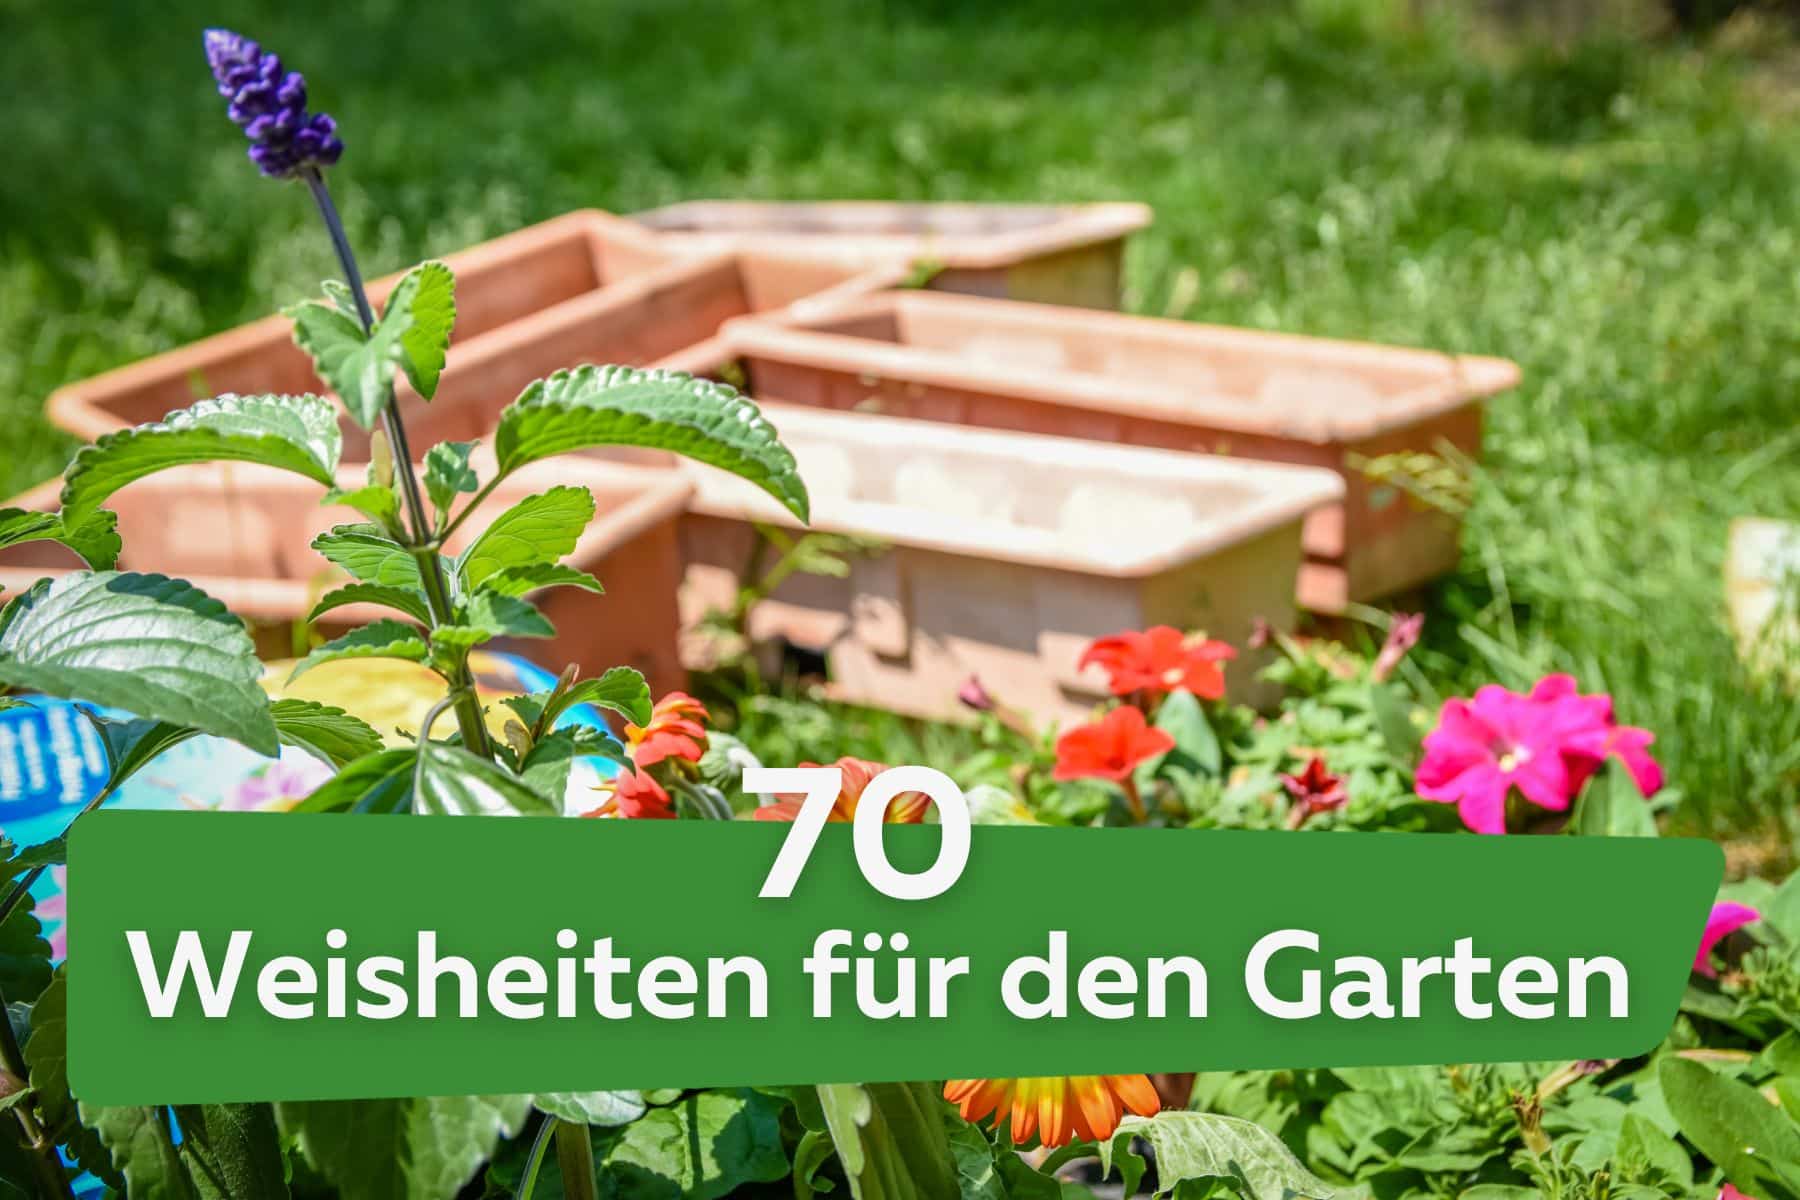 Sprüche für den Garten: 70 Weisheiten